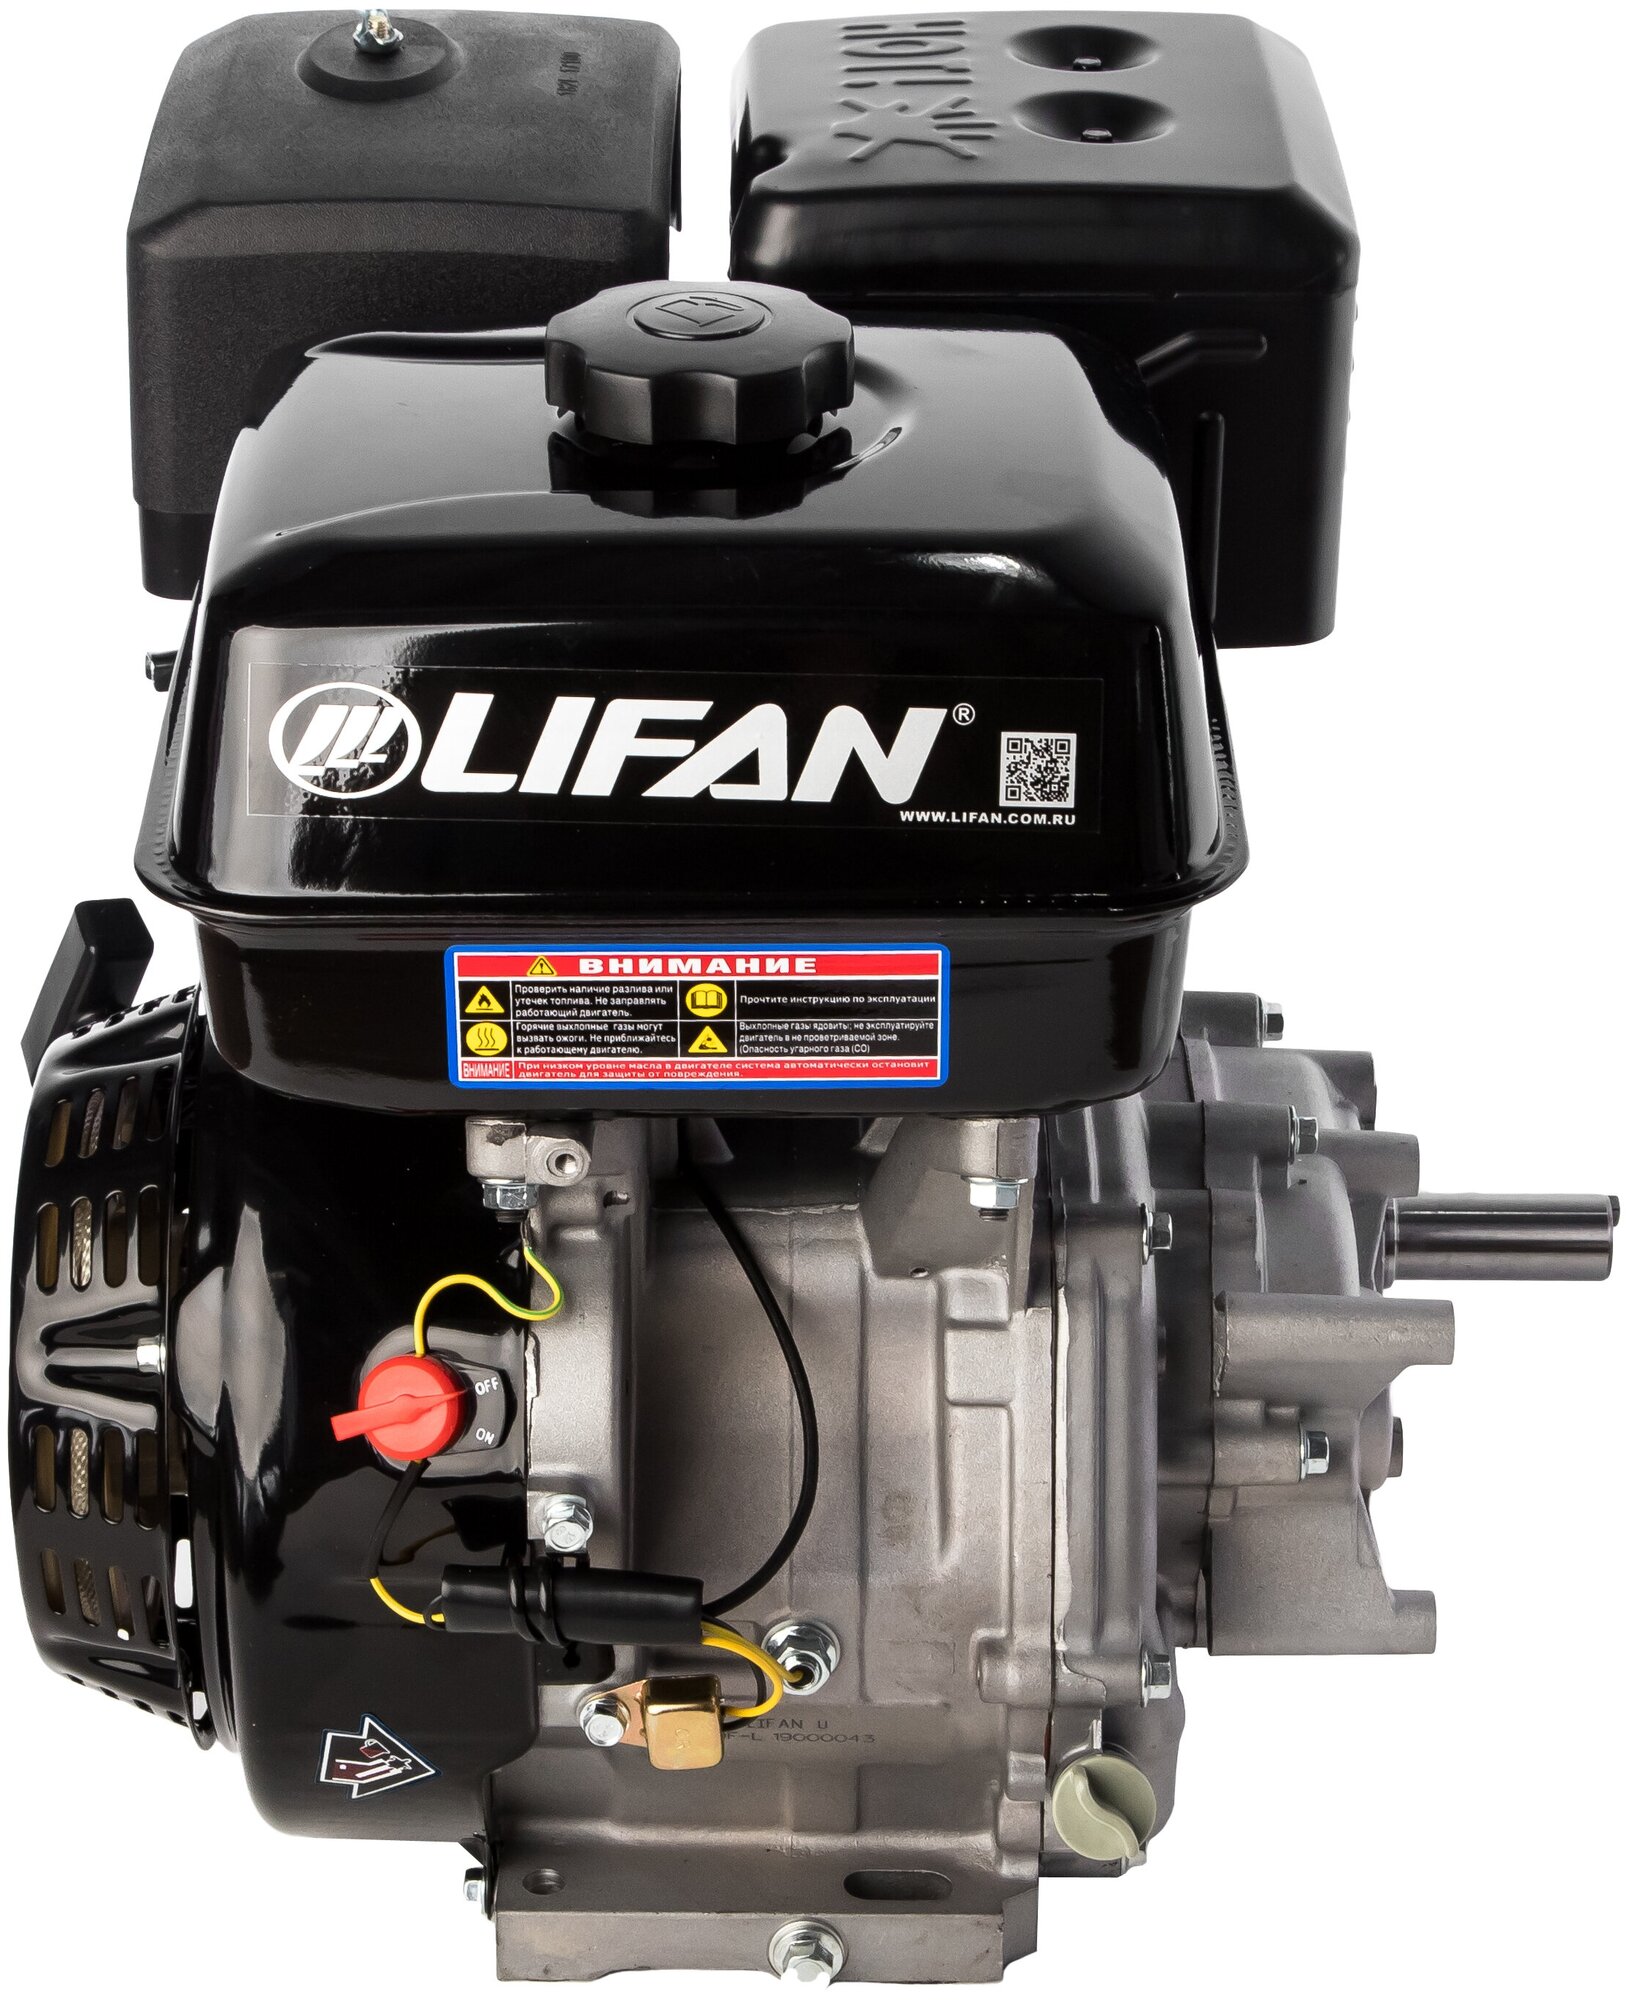 Двигатель LIFAN 15 л. с. 190FL c косозубчатым понижающим редуктором 2:1, диаметр выходного вала 25 мм